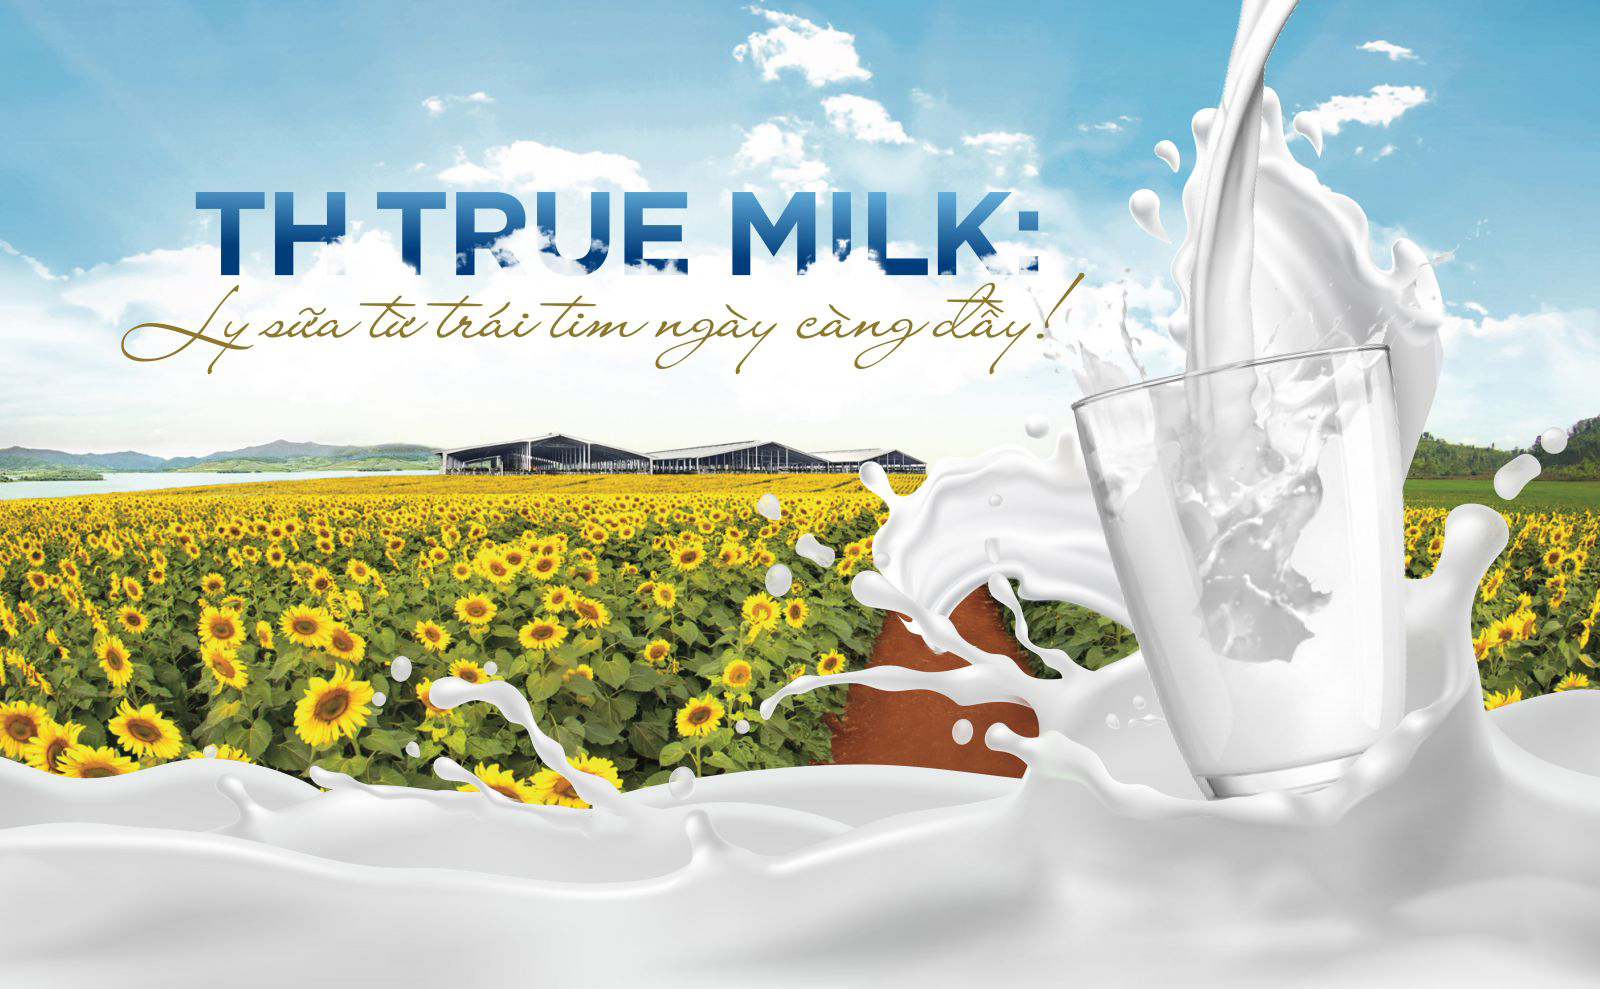 TH True Milk - Sữa tươi sạch tinh túy từ thiên nhiên